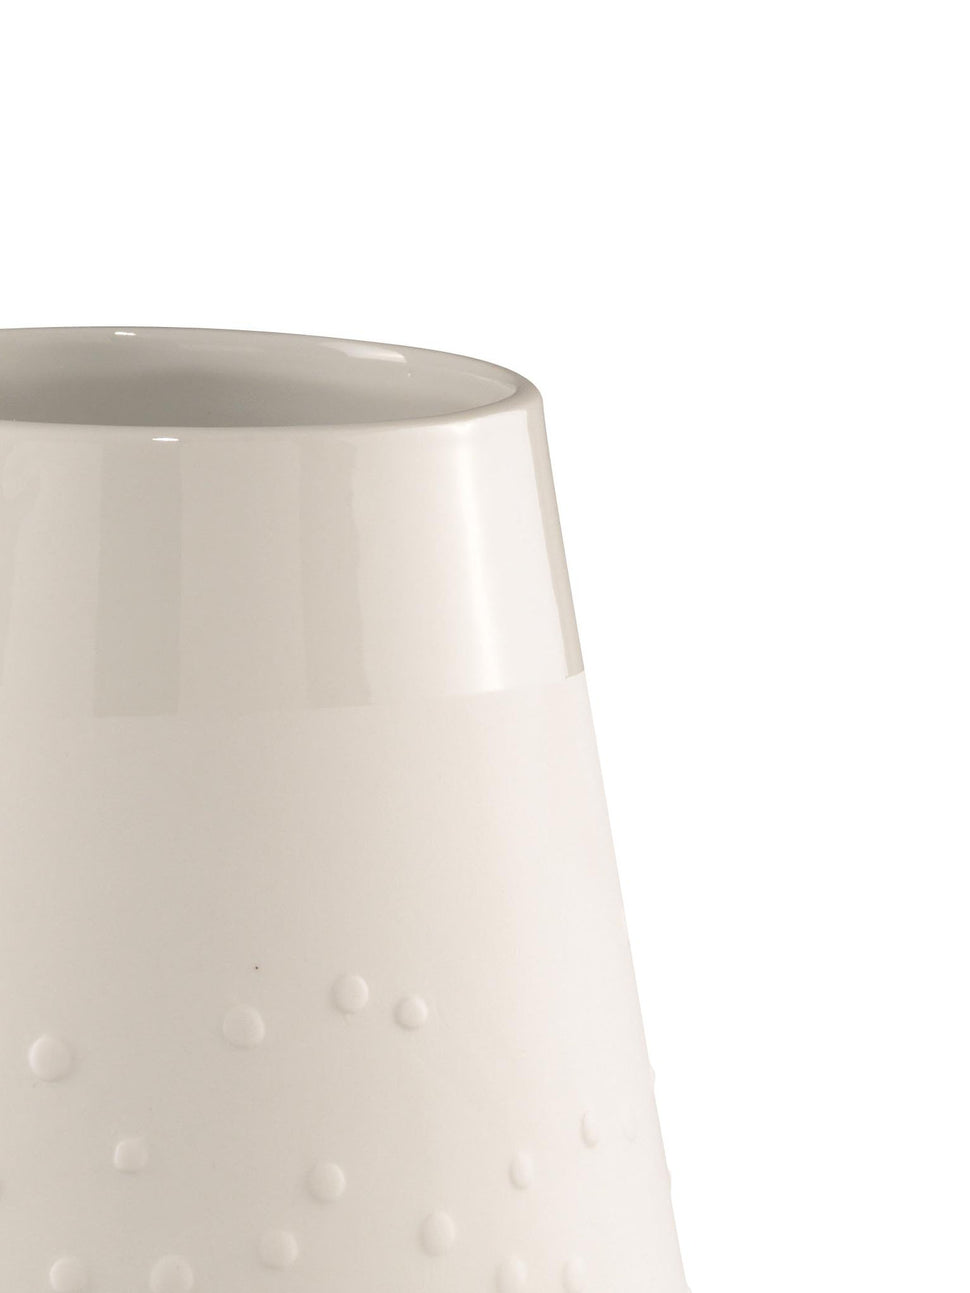 white porcelain dotty vase